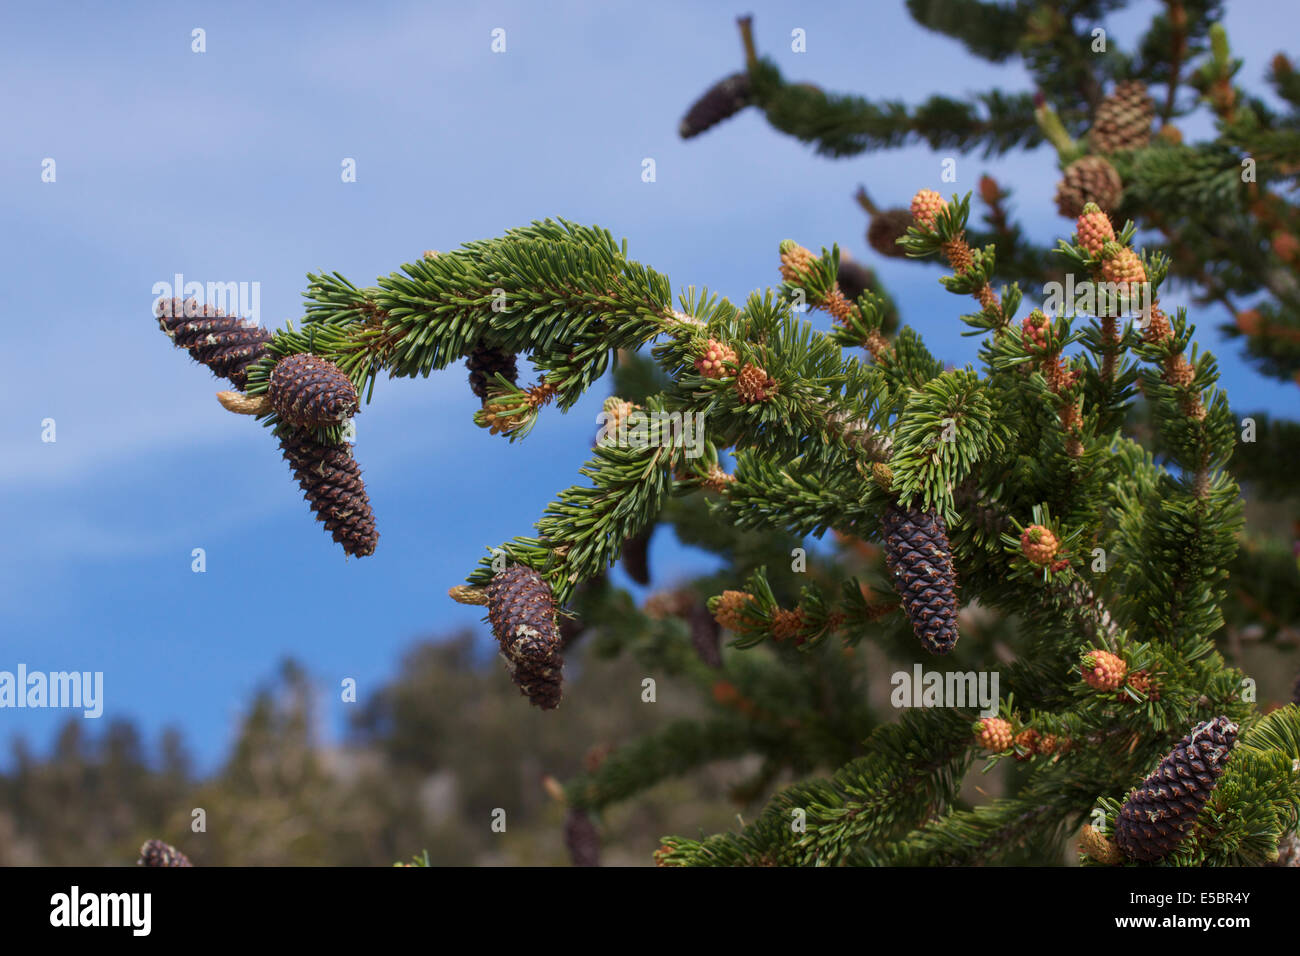 Ancient Bristlecone Pine Tree dans les montagnes blanches de Californie Banque D'Images